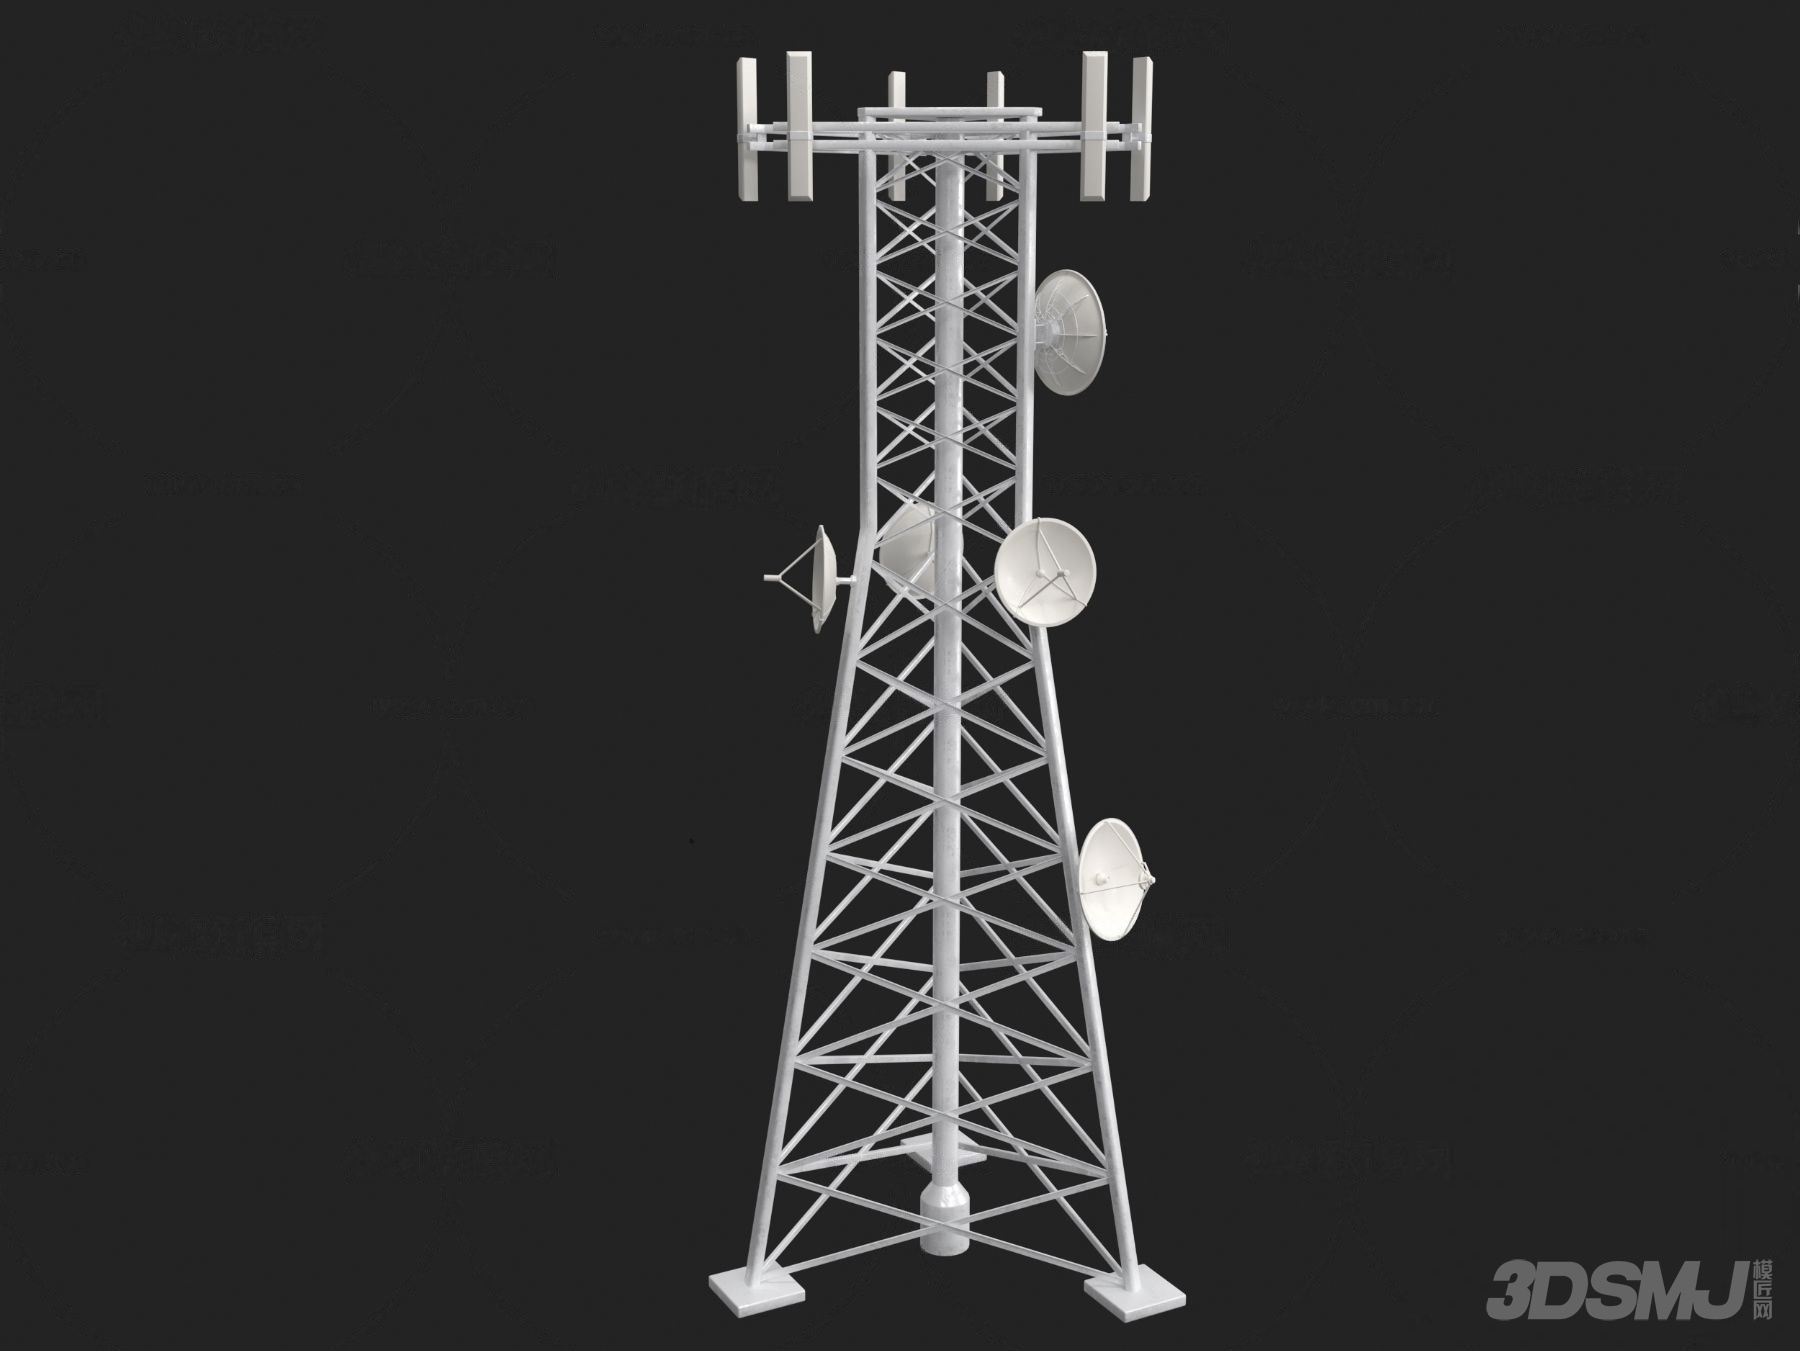 5G 网络信号塔模型图像：通向未来世界的桥梁与科技梦想的象征  第1张